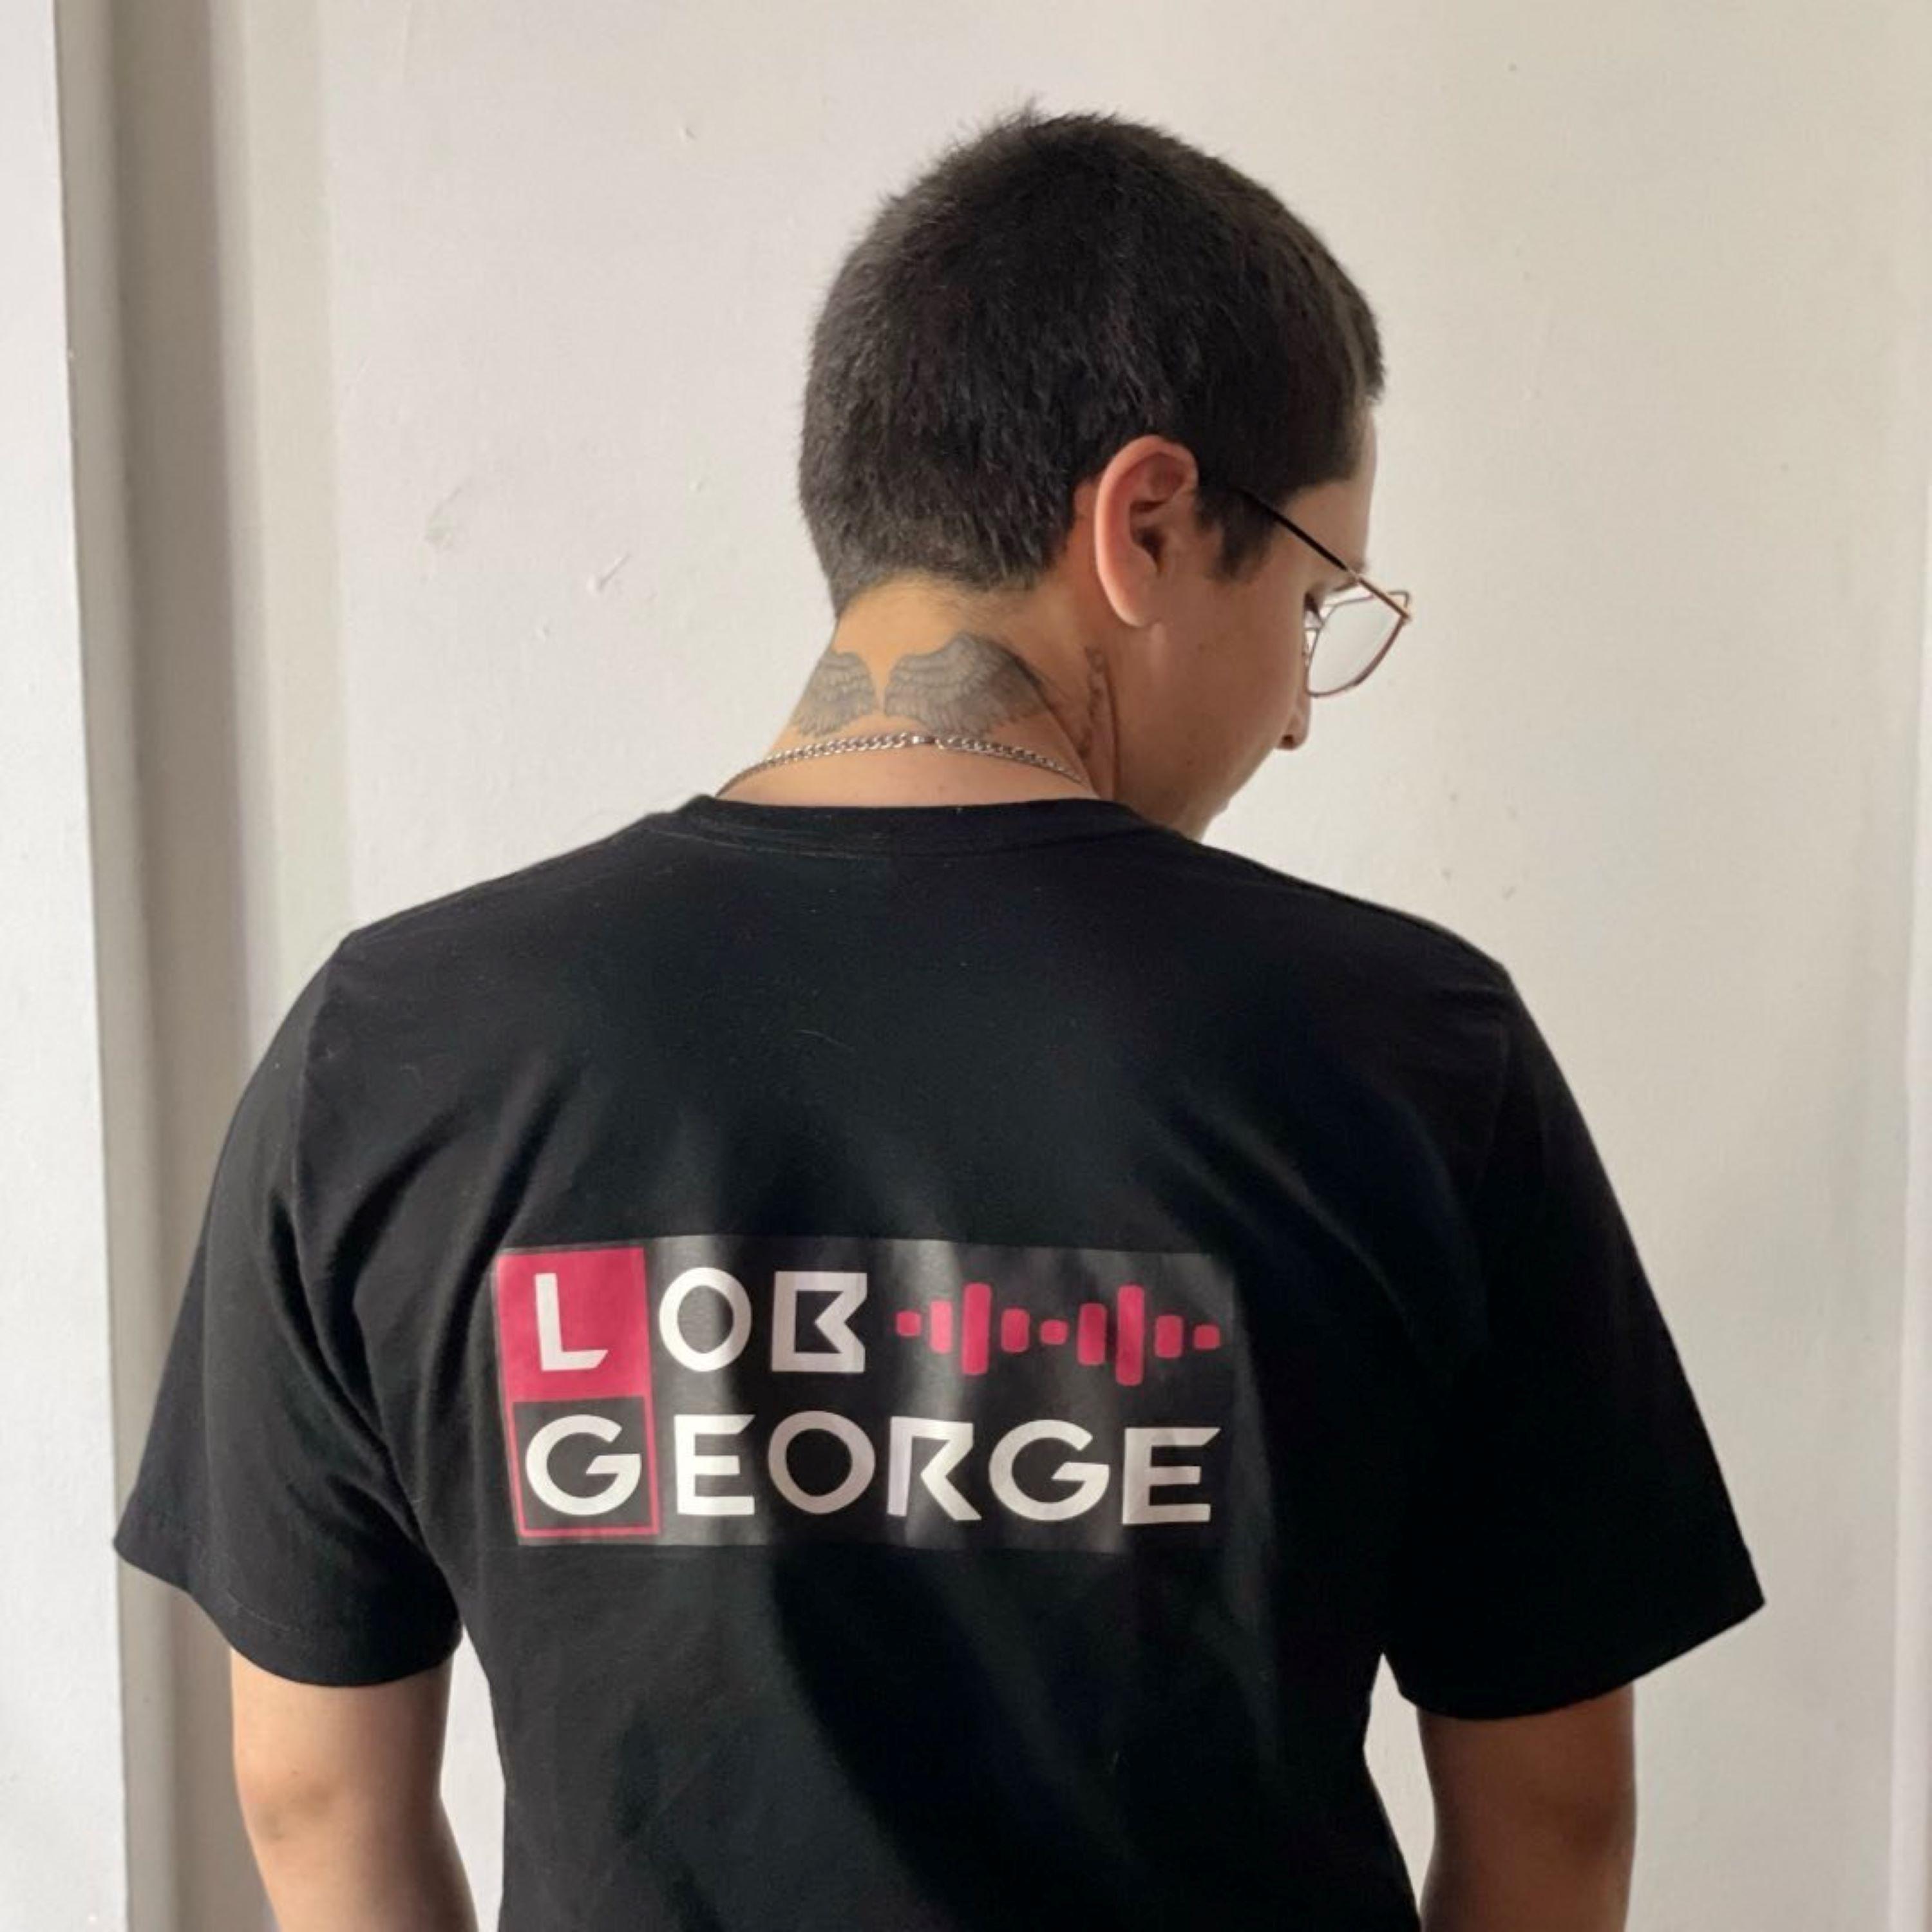 Lob George - Yeah (Demo)